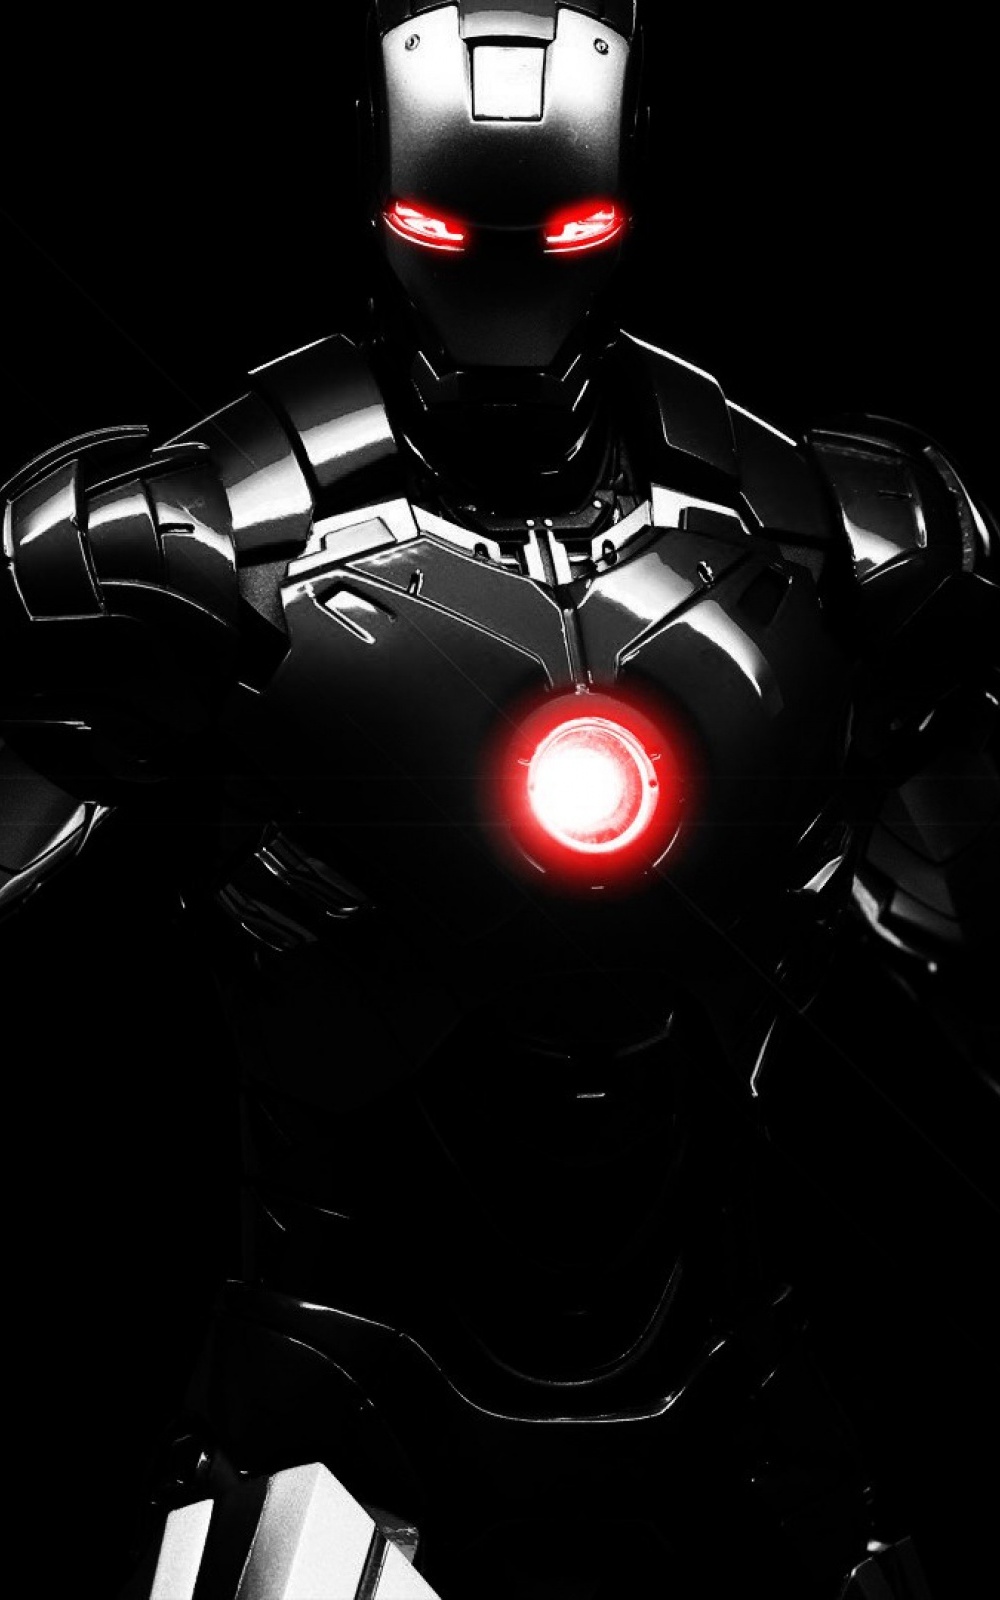 fond d'écran iron man pour iphone 6,homme de fer,personnage fictif,super héros,éclairage automobile,figurine